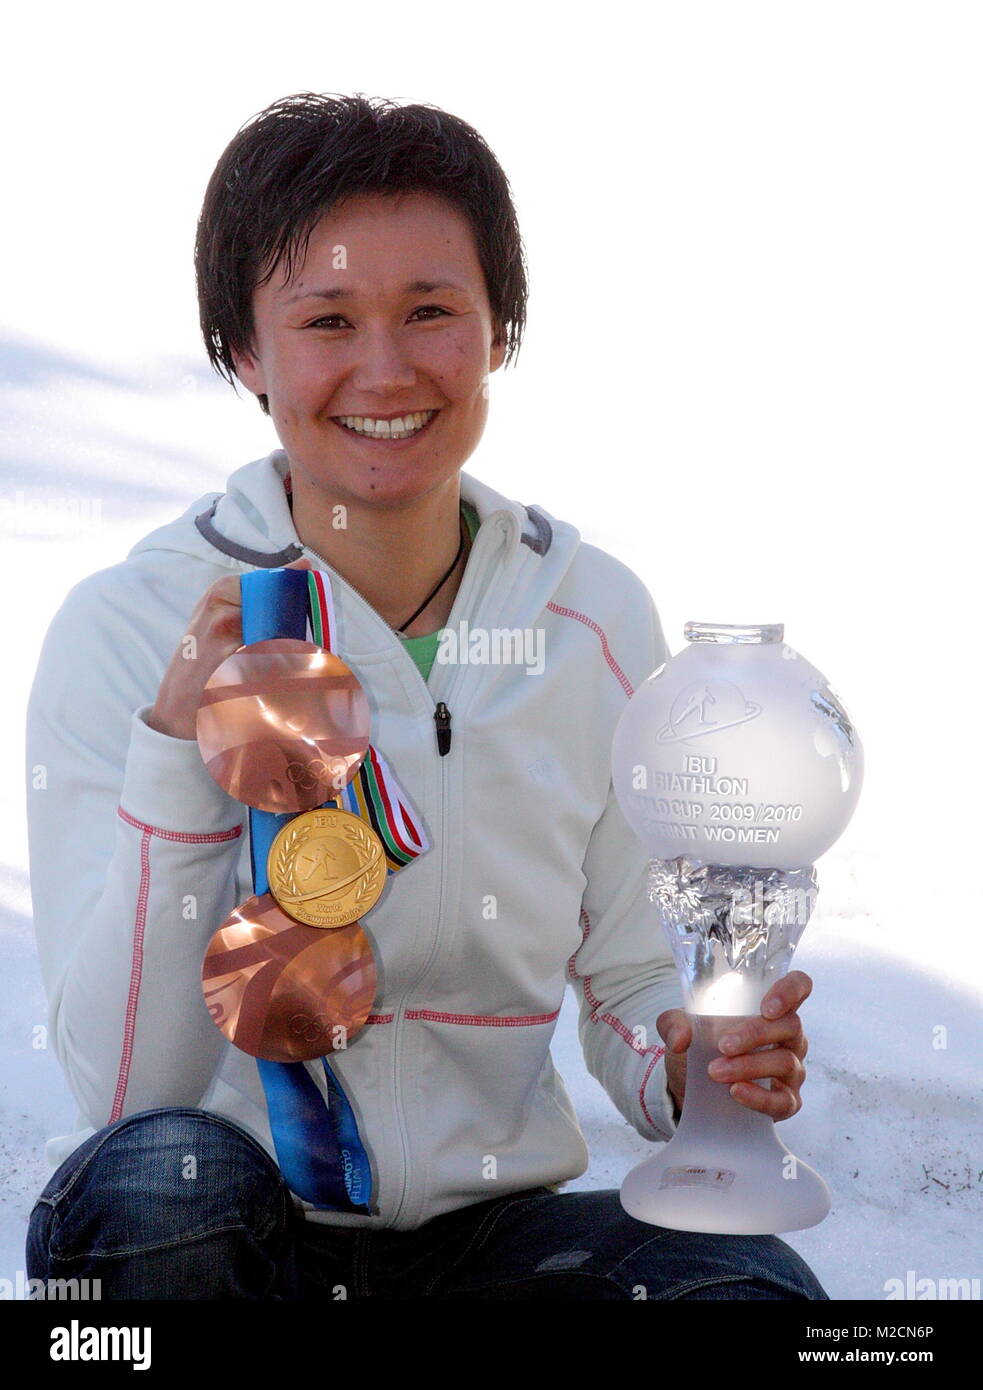 Medaillen- und Pokalsammlung der Biathletin Simone Hauswald (vorm. Denkinger) nach den Winterspielen von Vancouver und der WM Khanty Mansysk Stock Photo